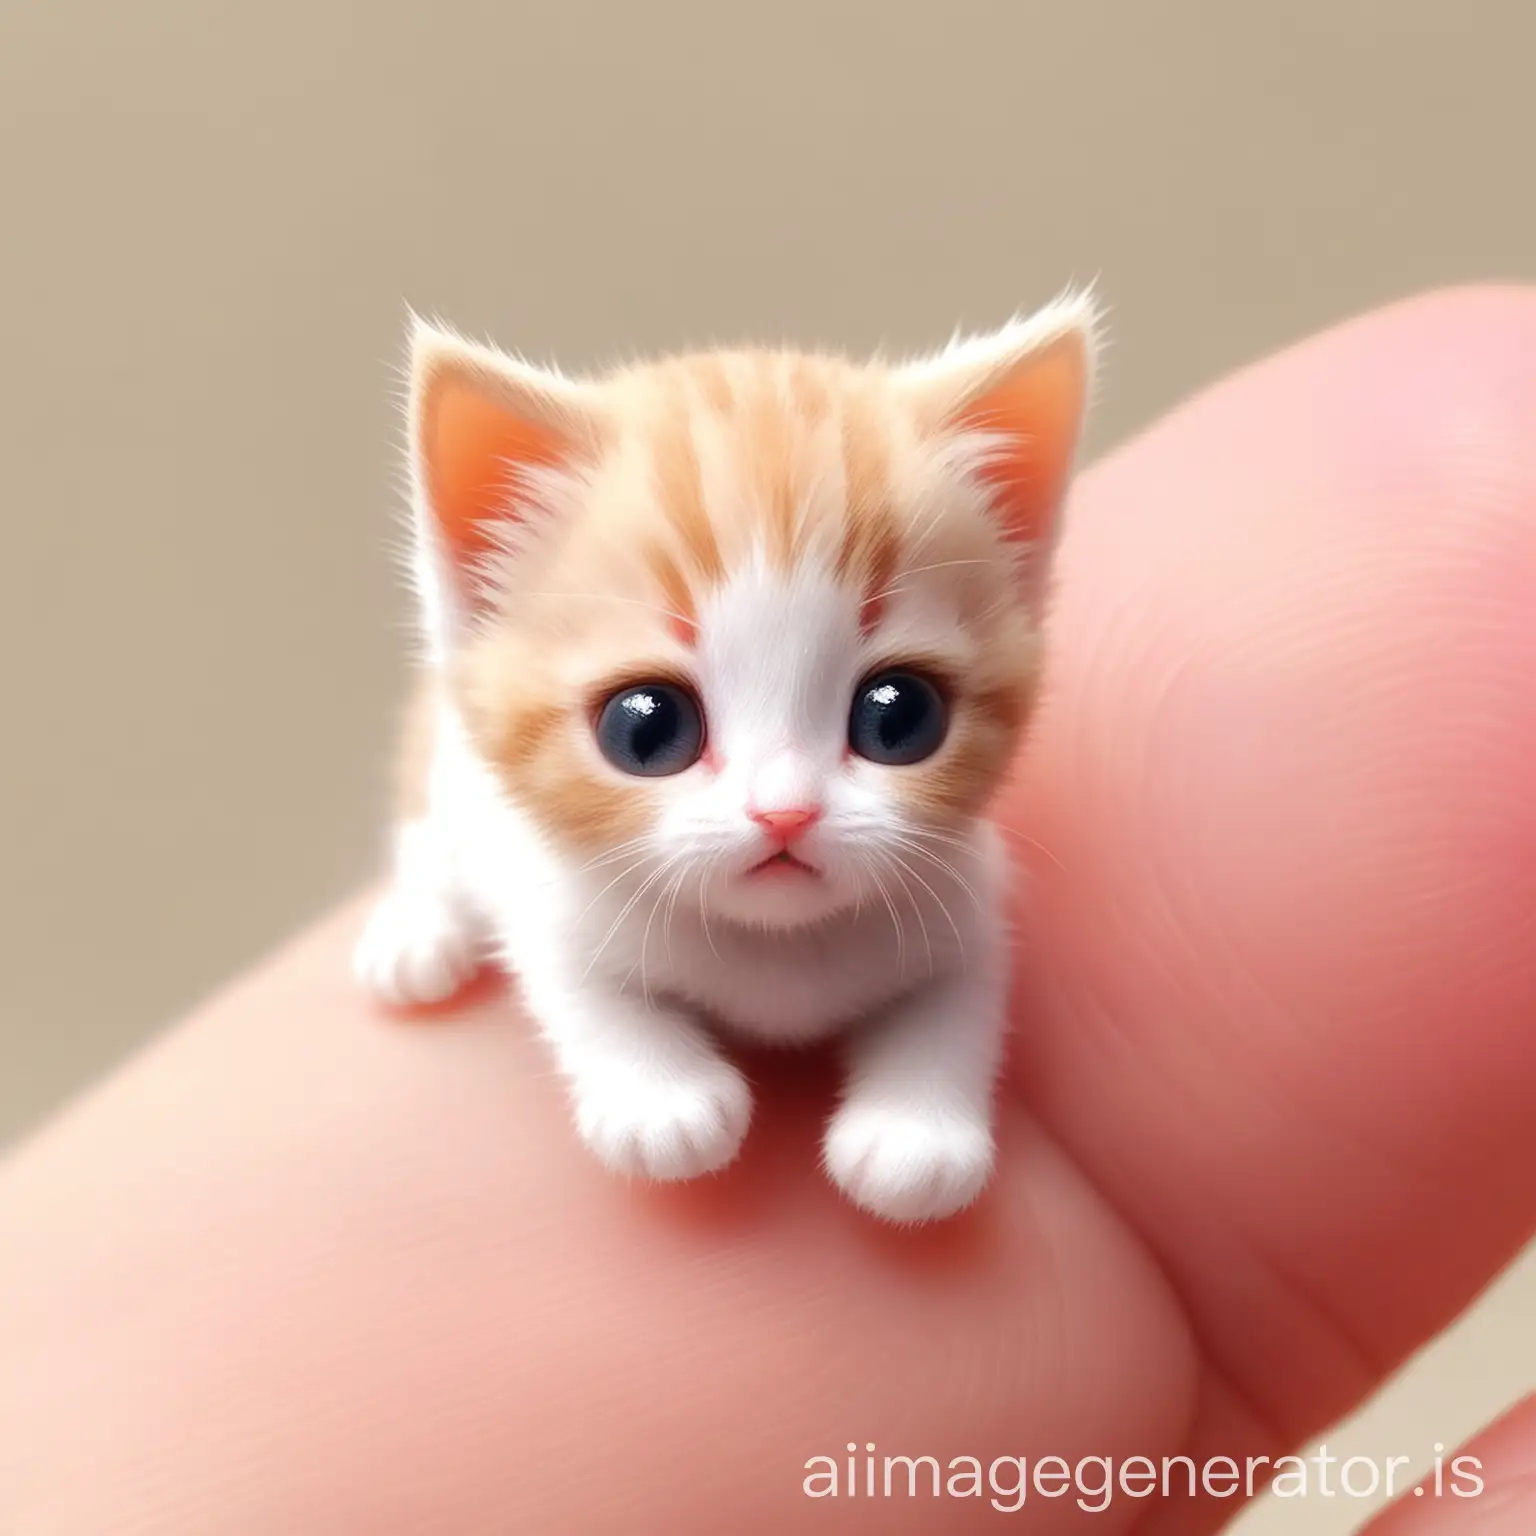 Tiny cute cat